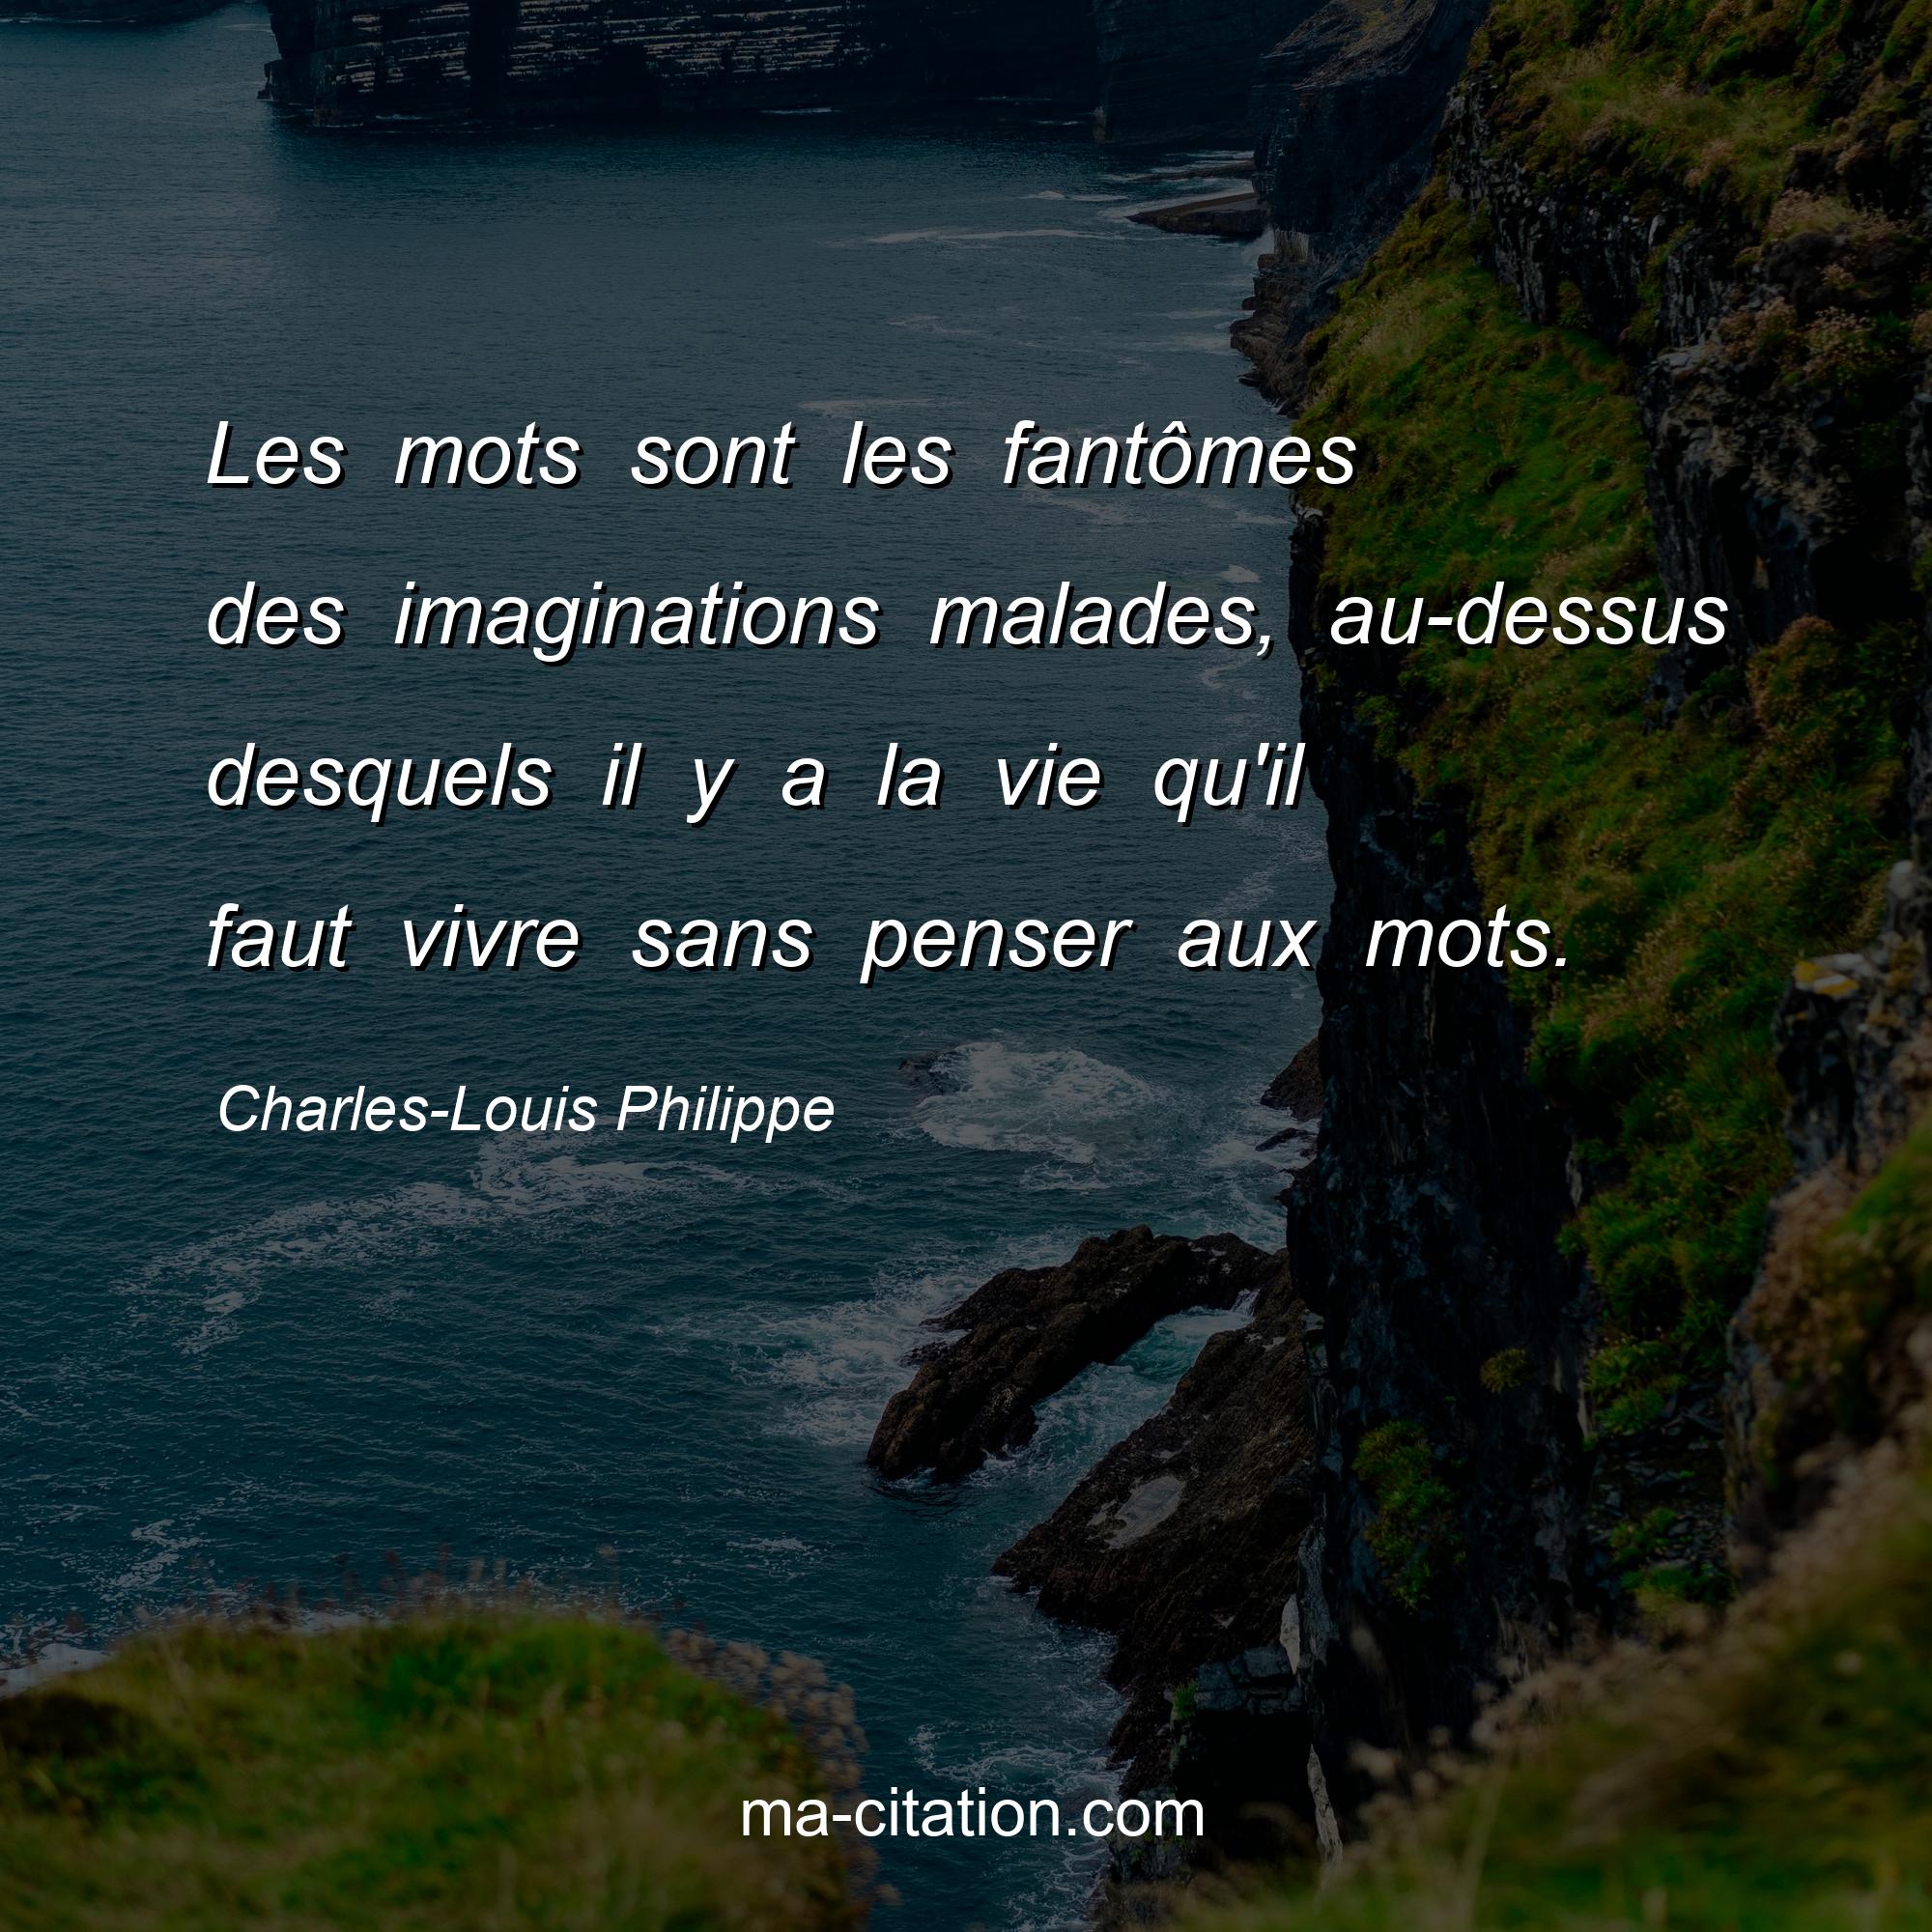 Charles-Louis Philippe : Les mots sont les fantômes des imaginations malades, au-dessus desquels il y a la vie qu'il faut vivre sans penser aux mots.